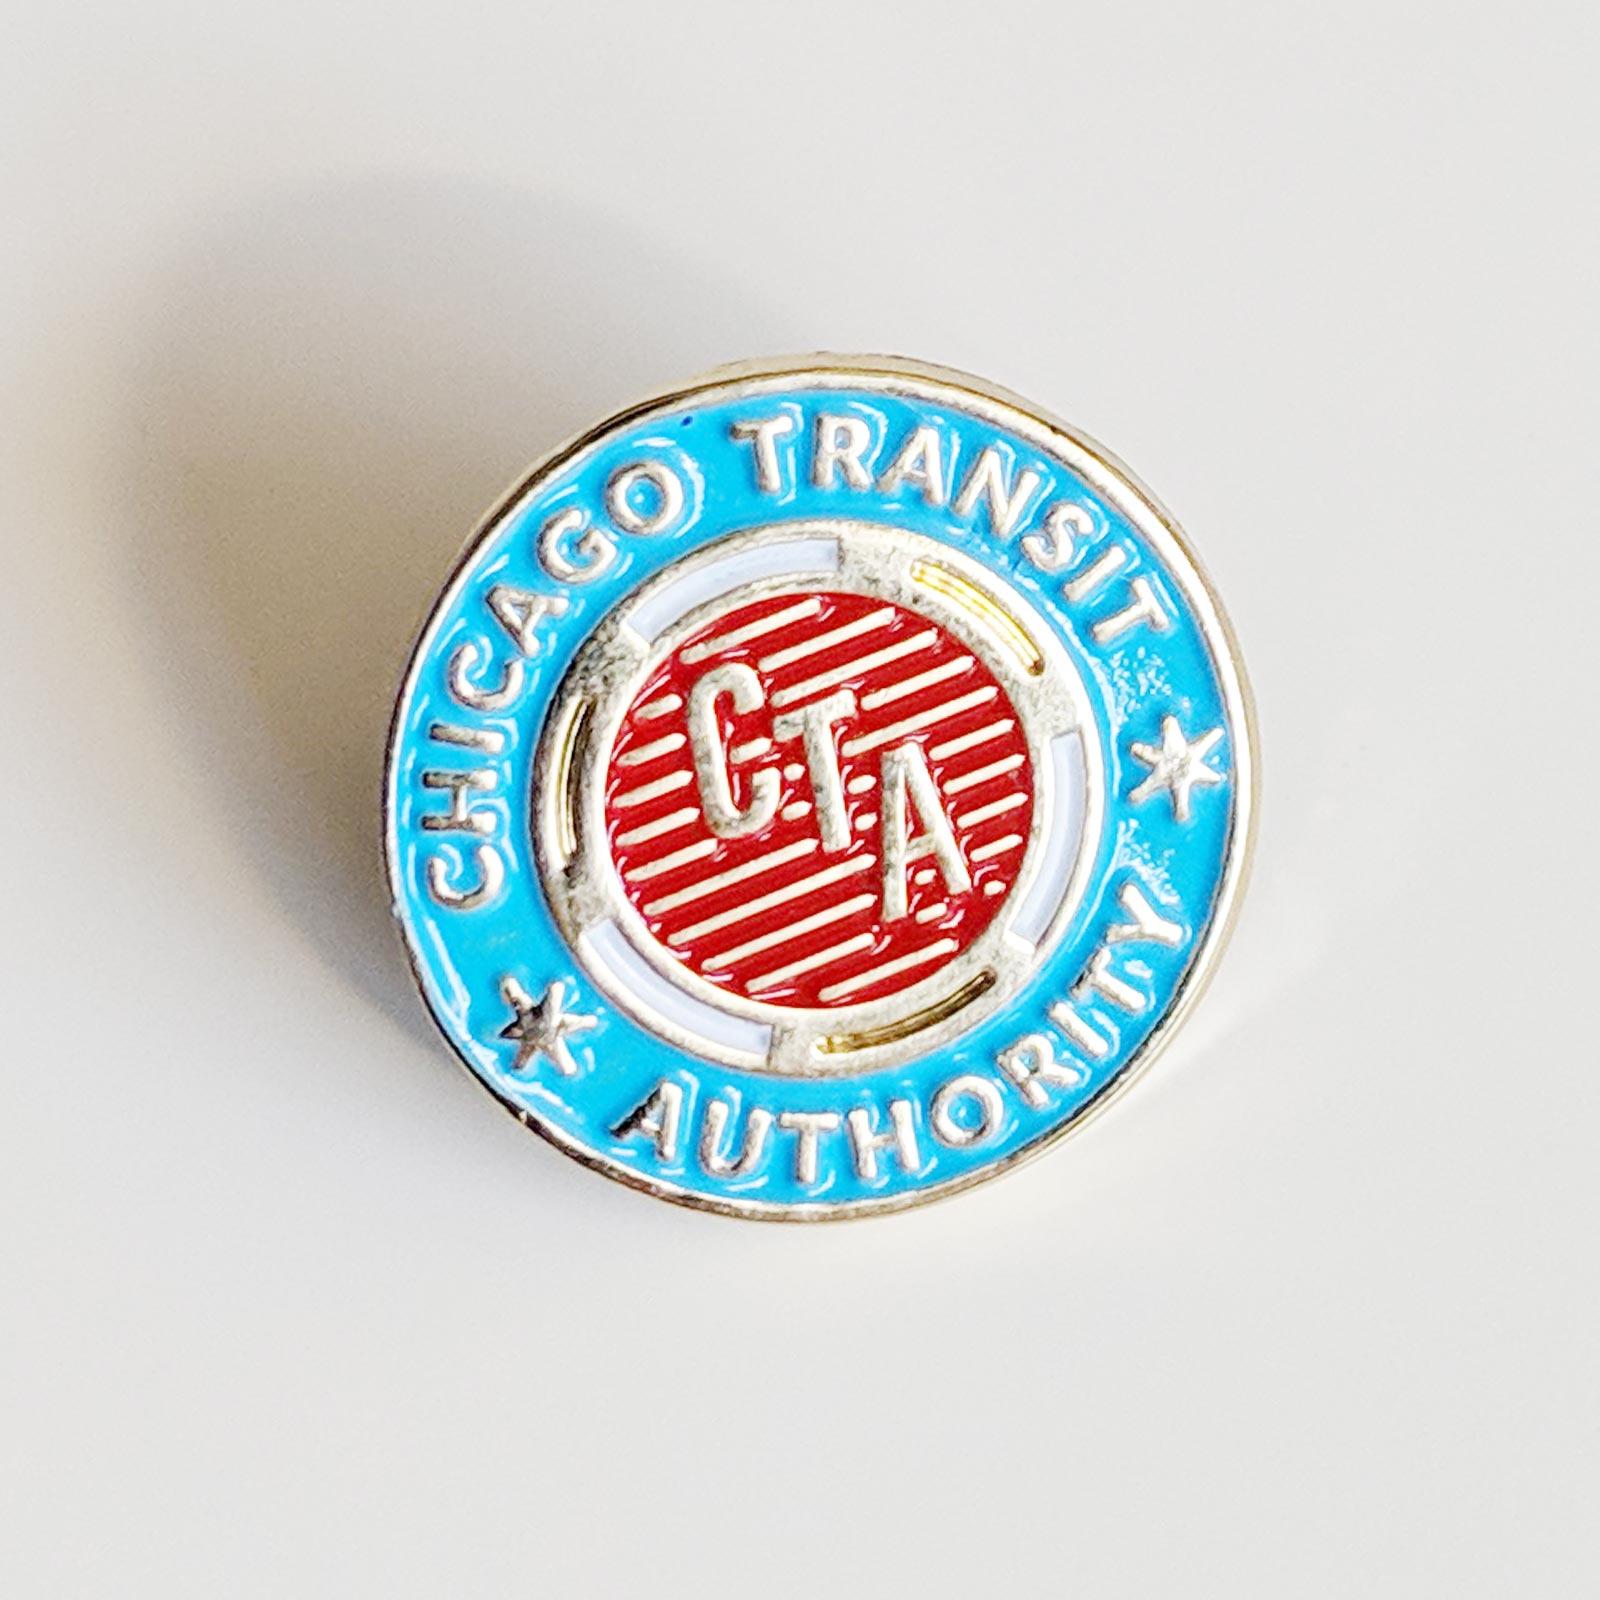 Chicago Transit Authority Logo - CTA Token enamel pin. Rock on Paper